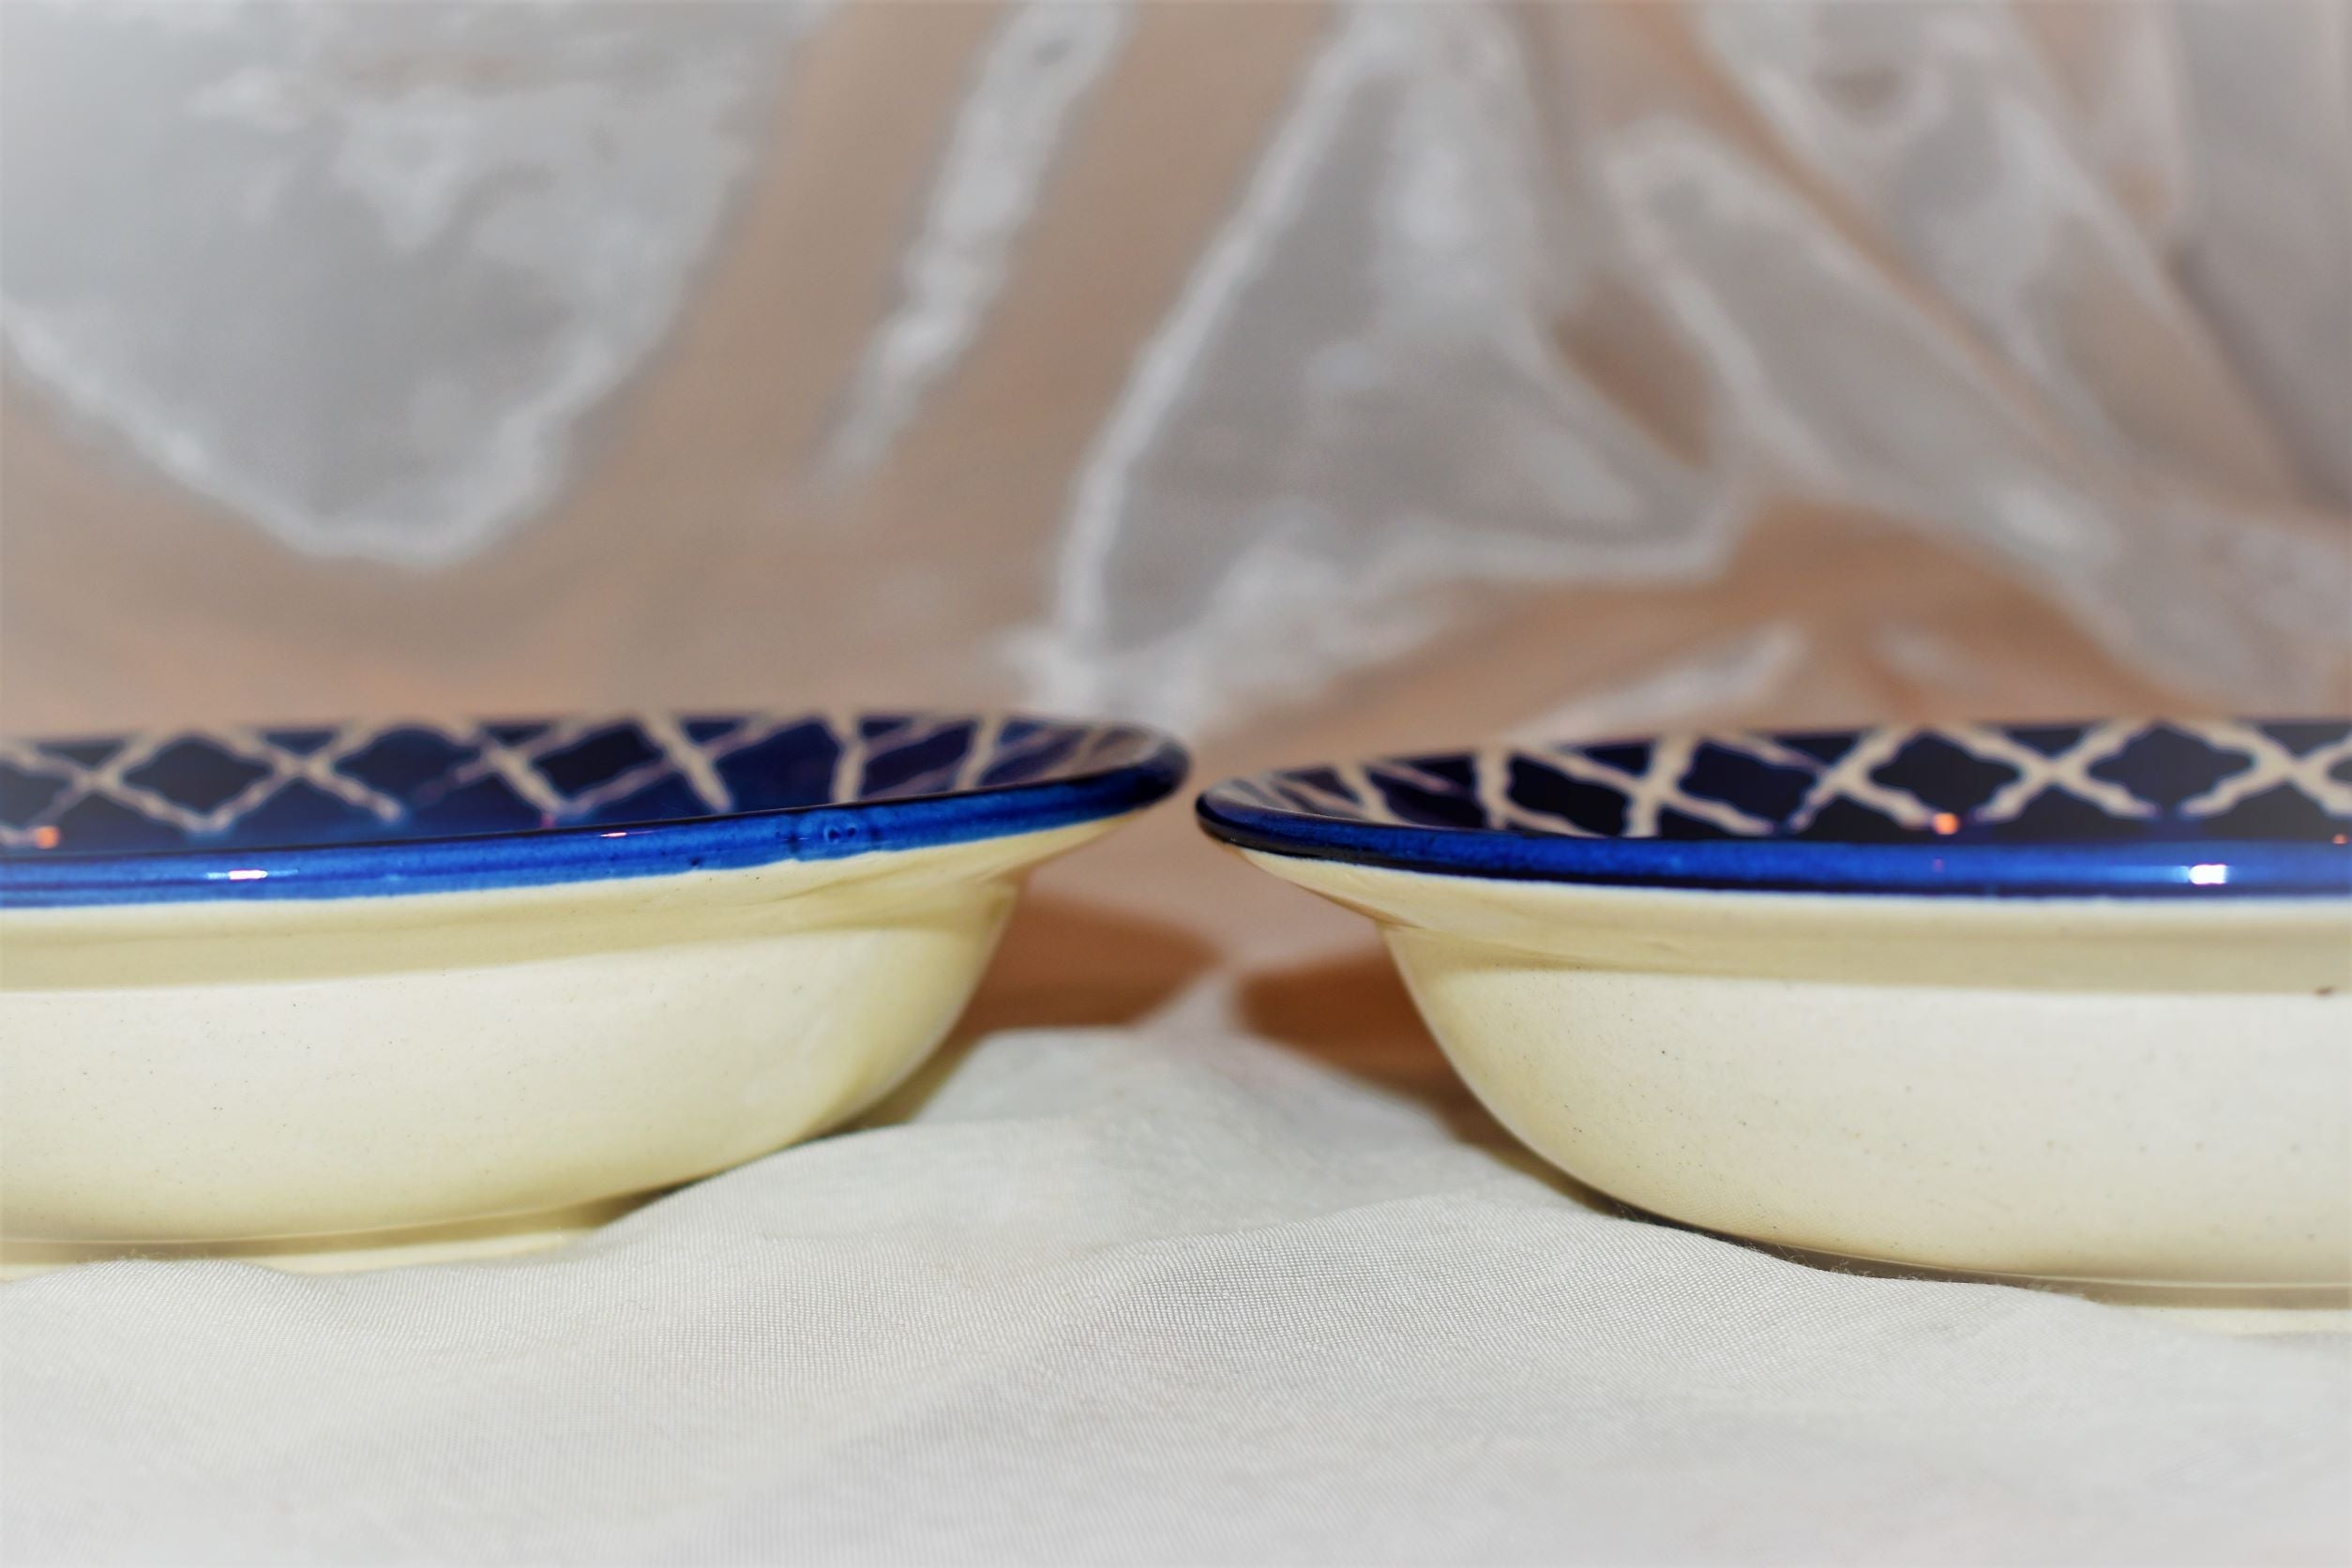 Yahto Blue Pottery Pasta Bowls